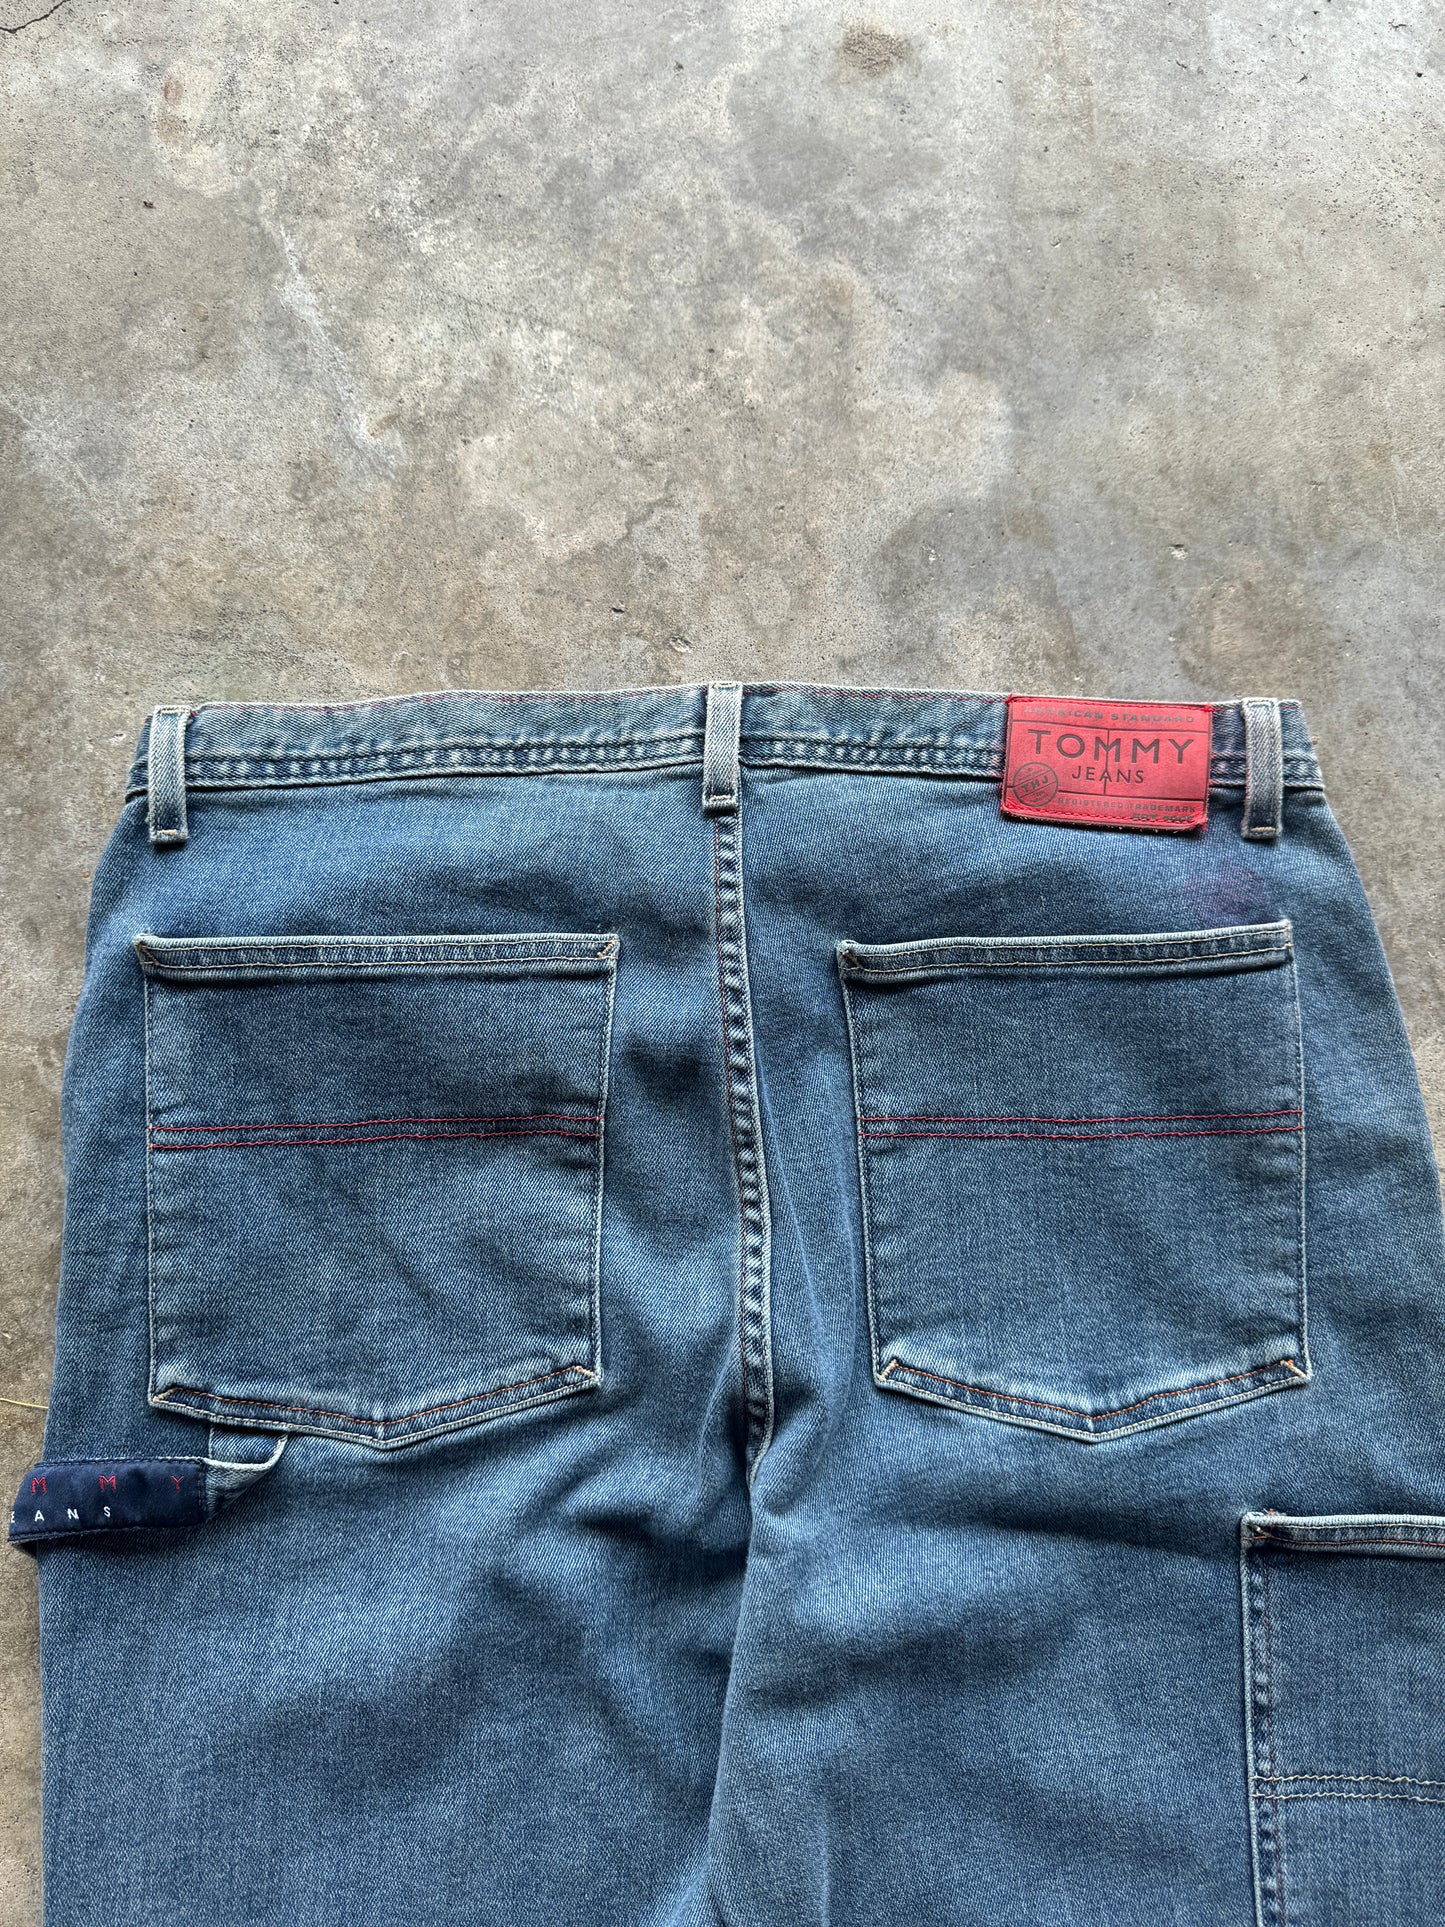 (38) Tommy Hilfiger Denim Jeans